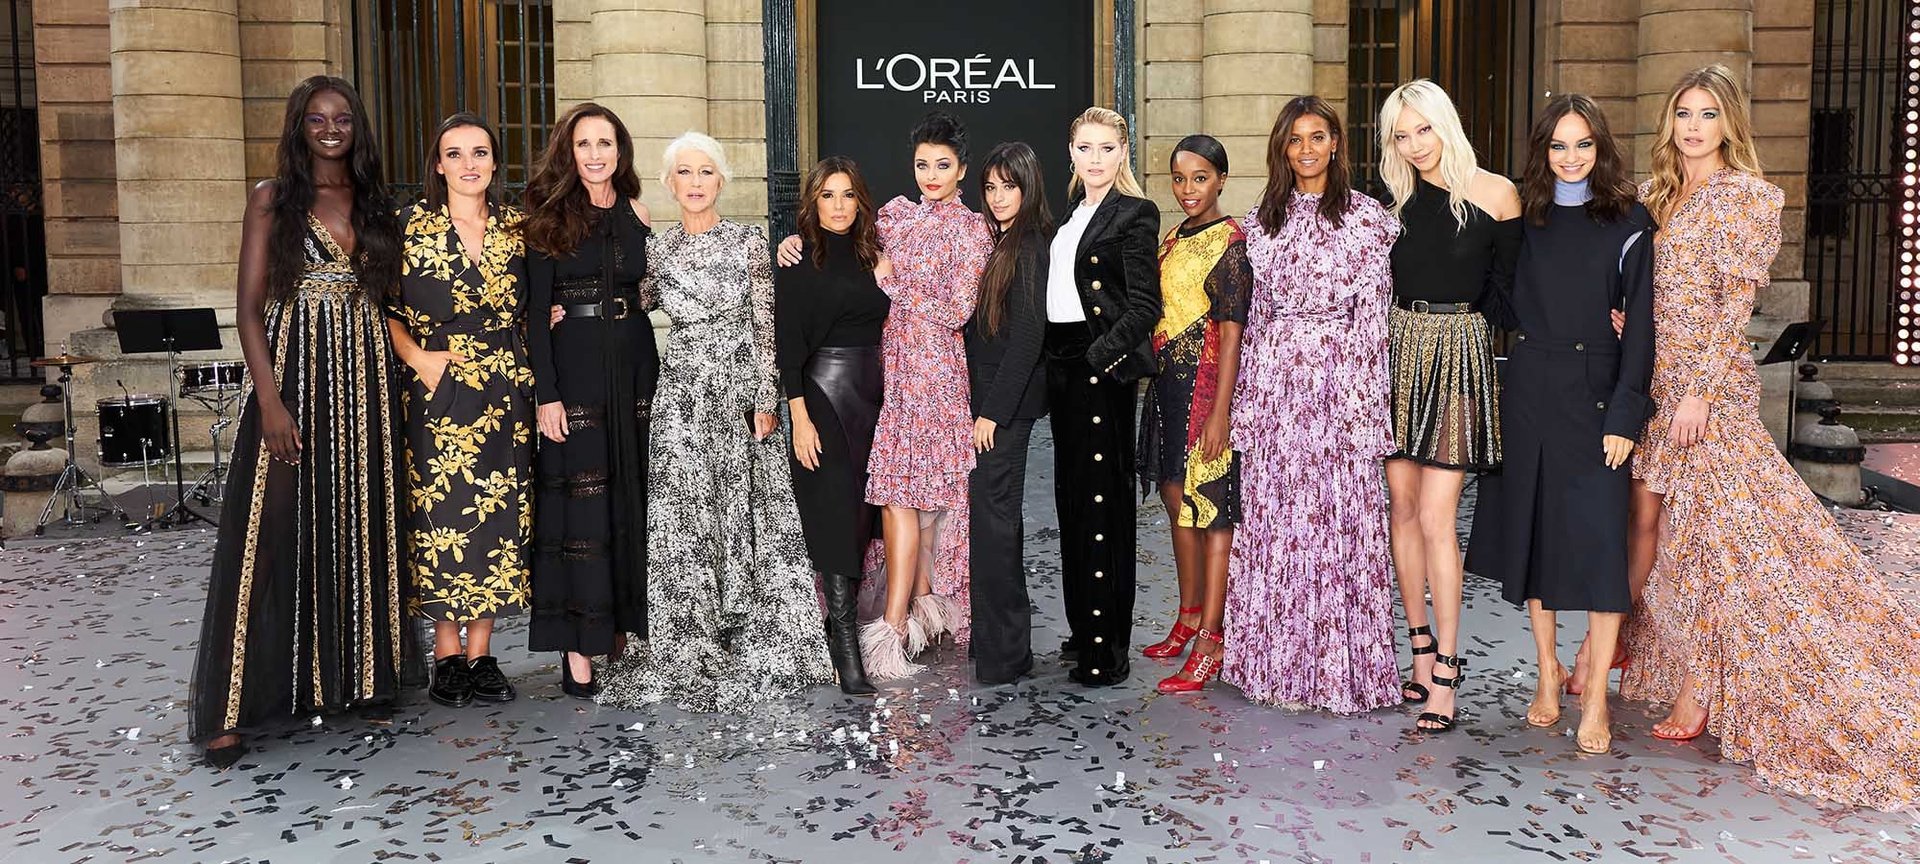 The L'Oréal Paris “Dream Team” / / Actresses / Activists Paris